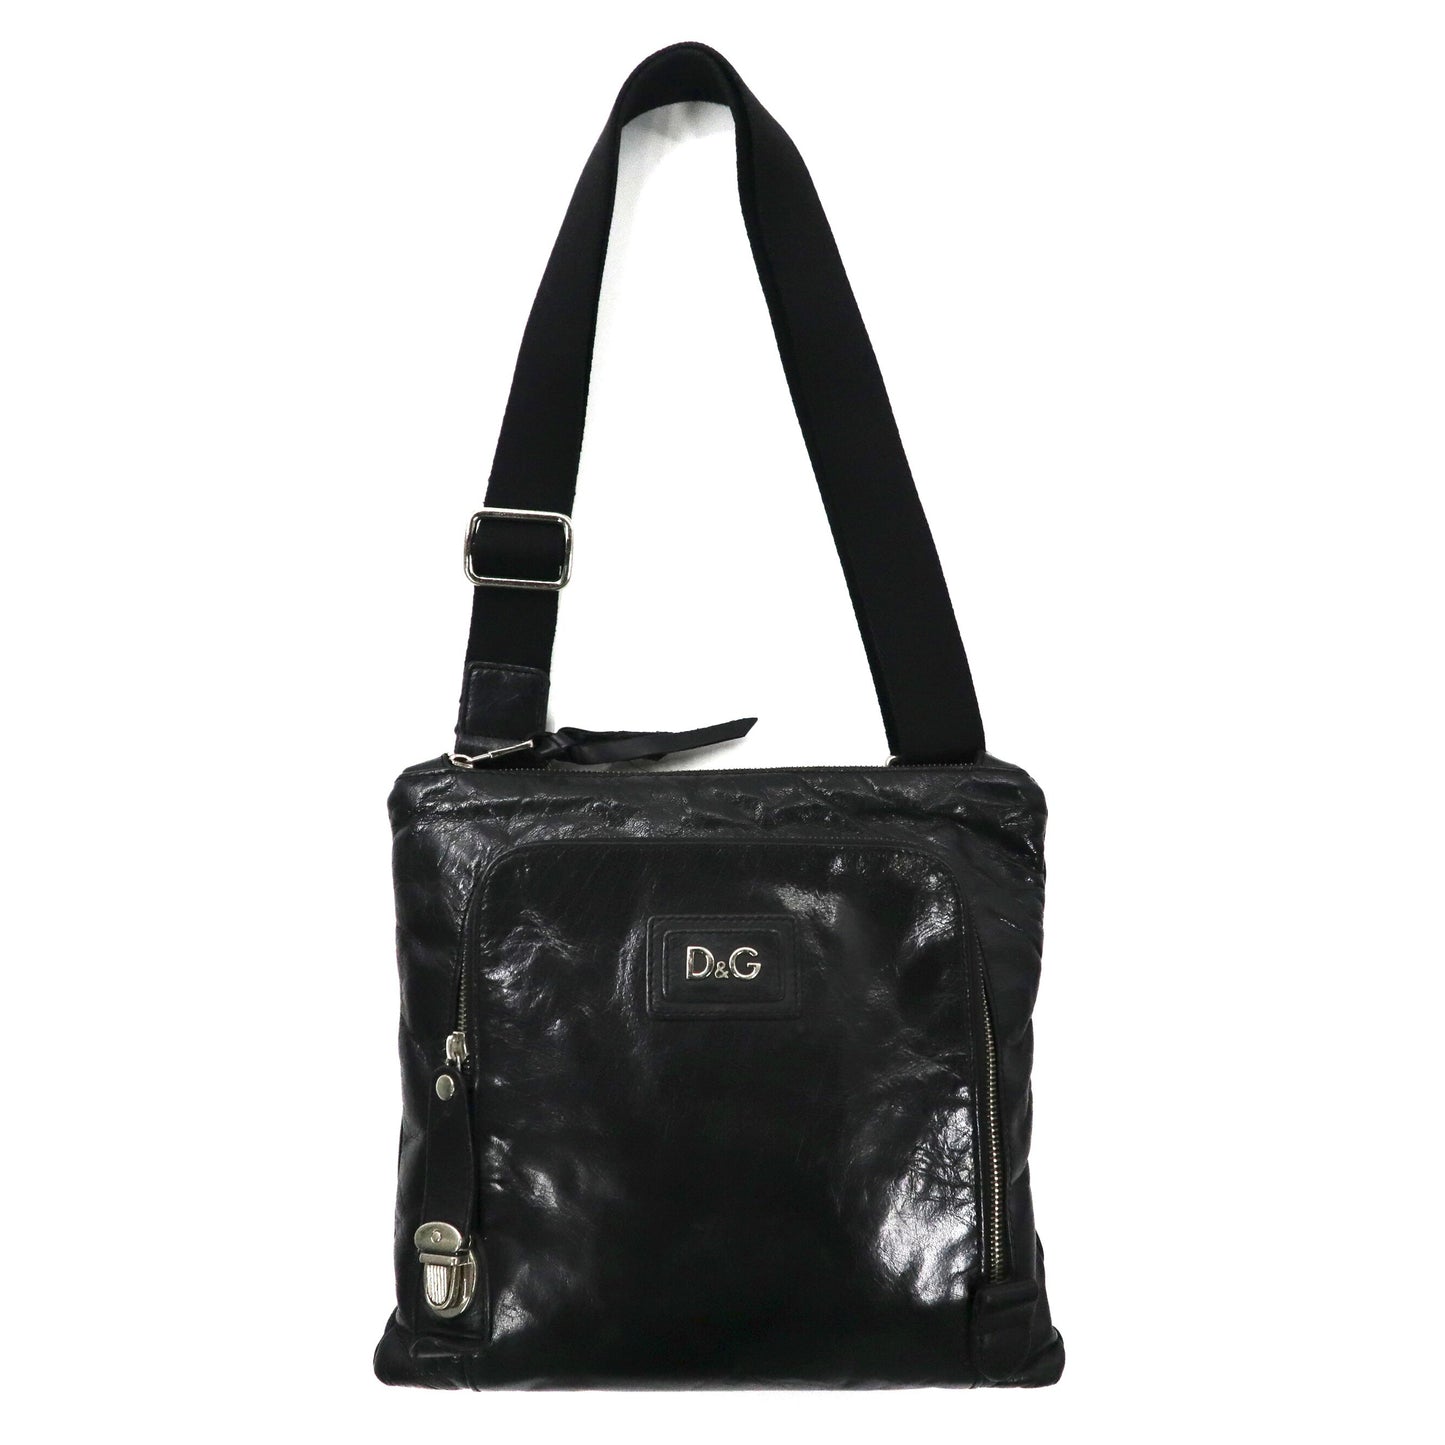 DG shoulder bag black leather Bag Alan – 日本然リトテ